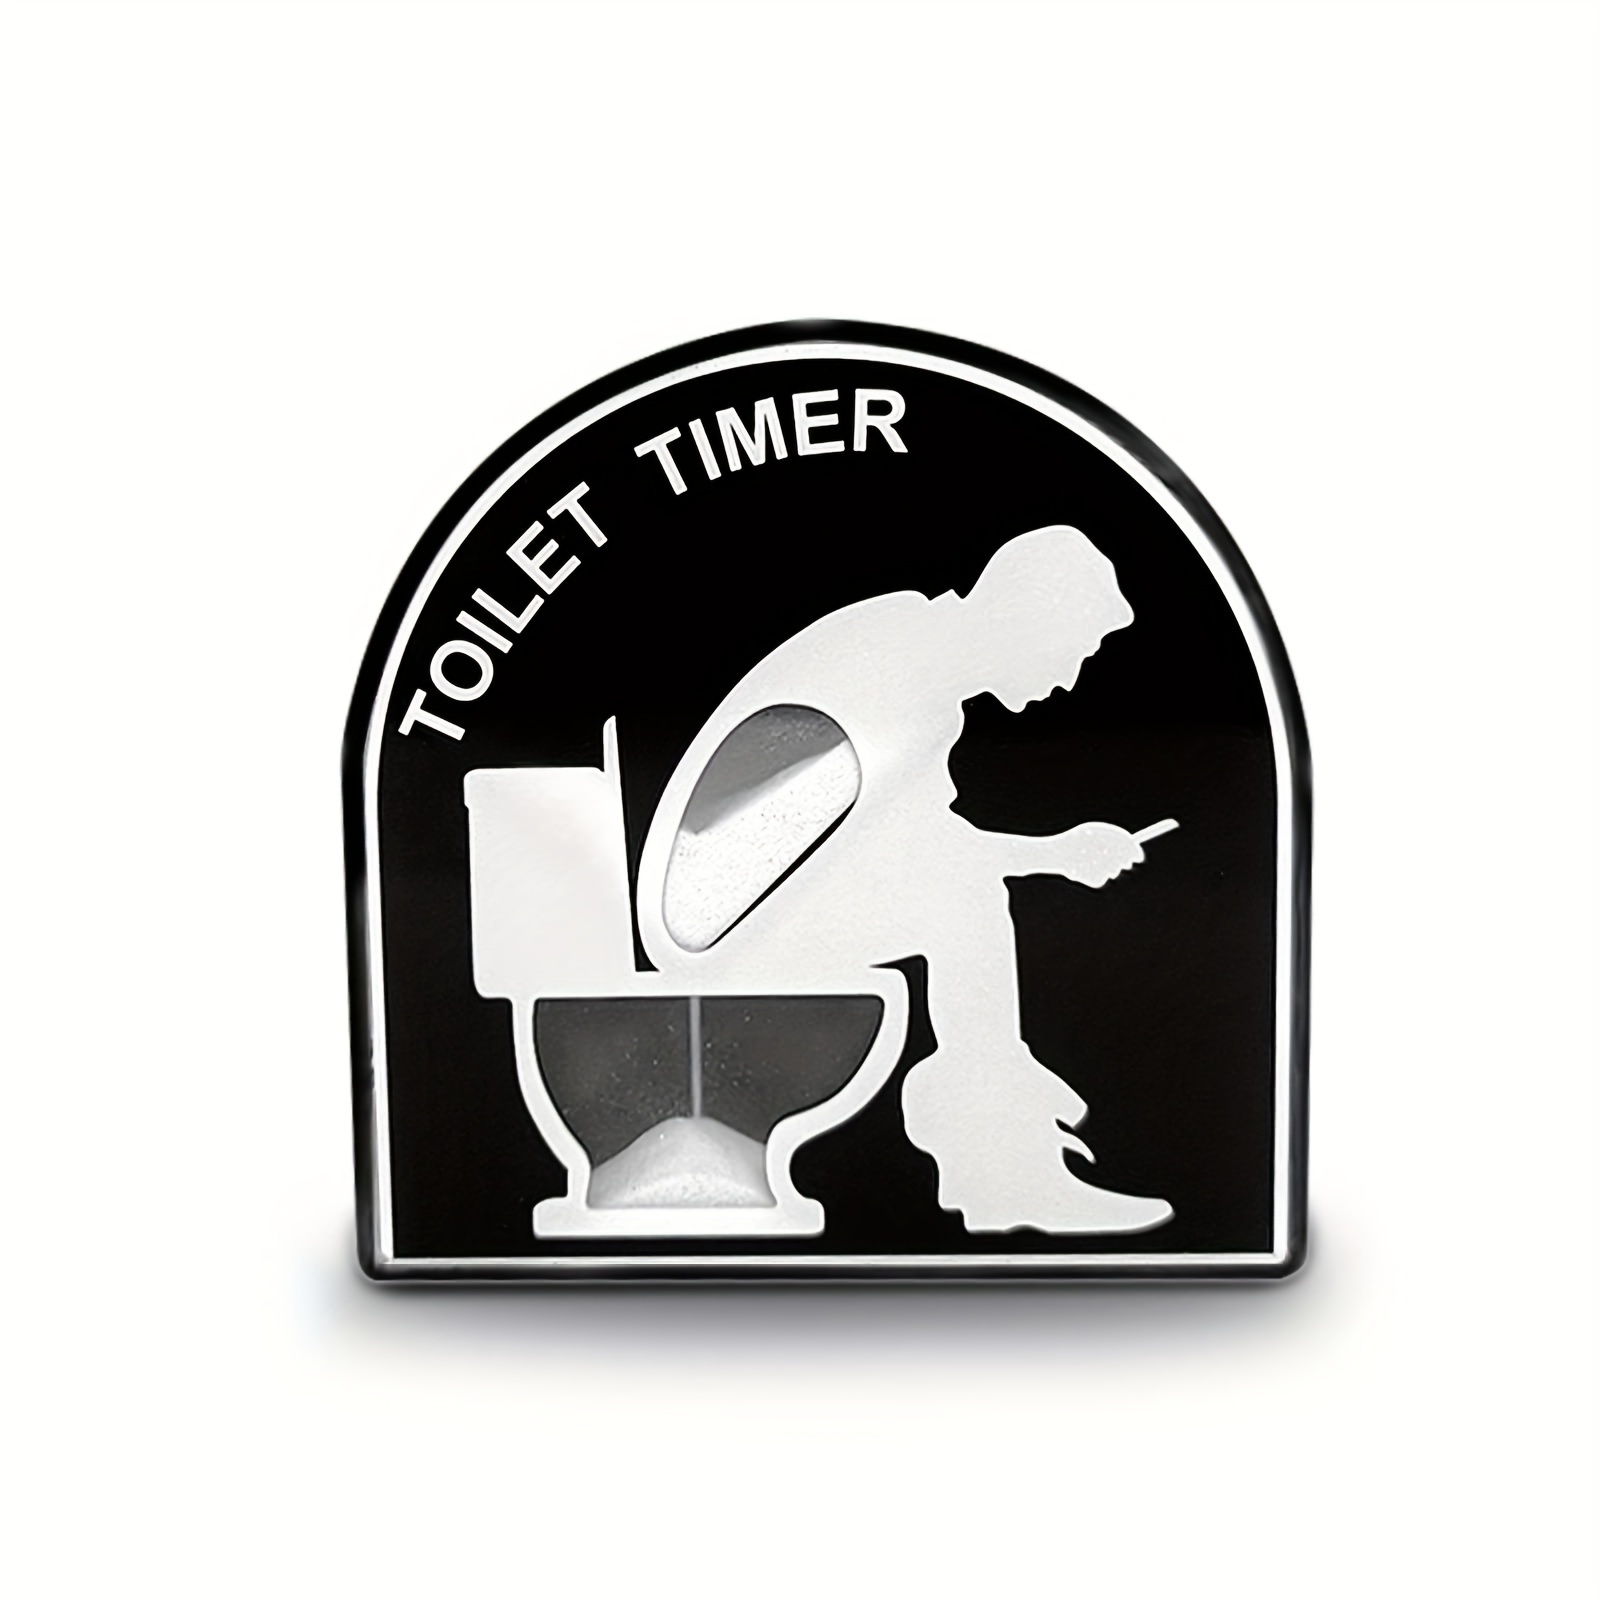 Toilet Timer - Great Gag Gift